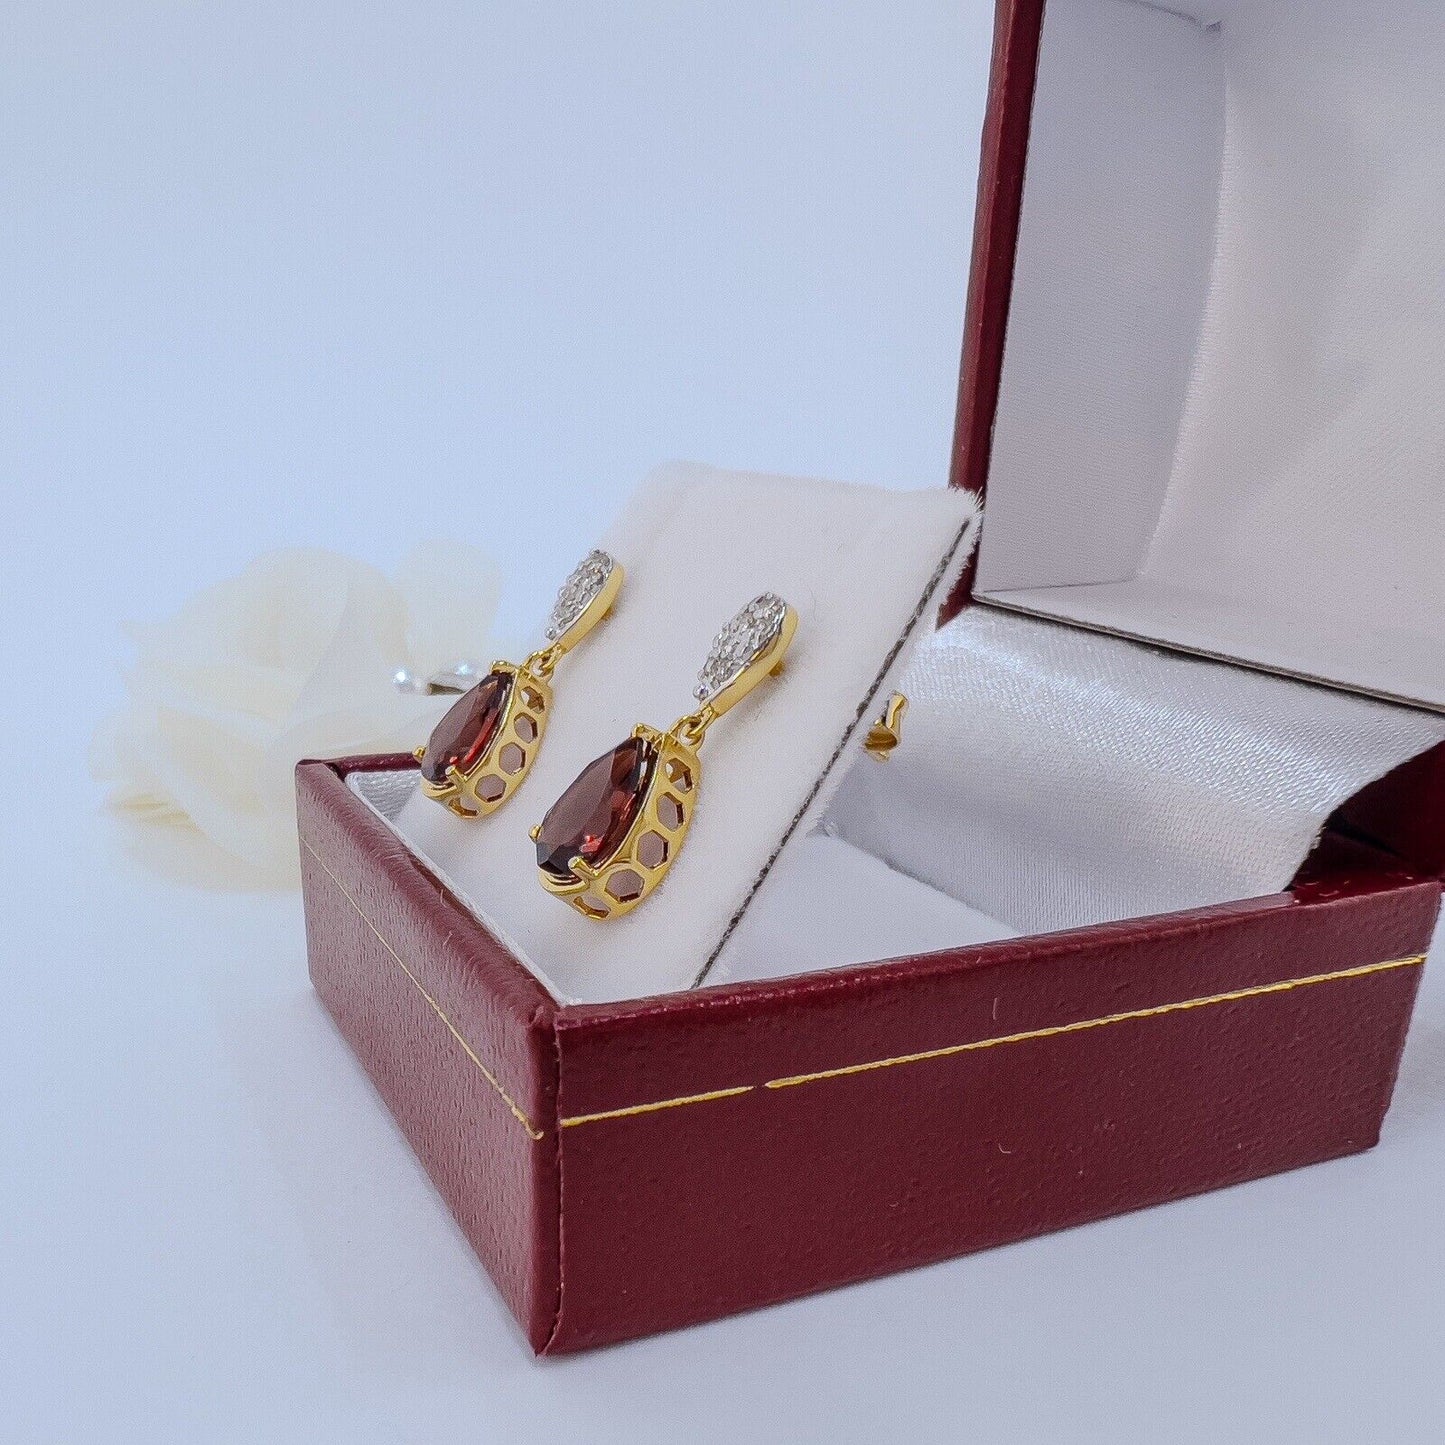 Genuine Pyrope Garnet & Diamond Solid 10k Yellow Gold Dangle/Drop Earrings